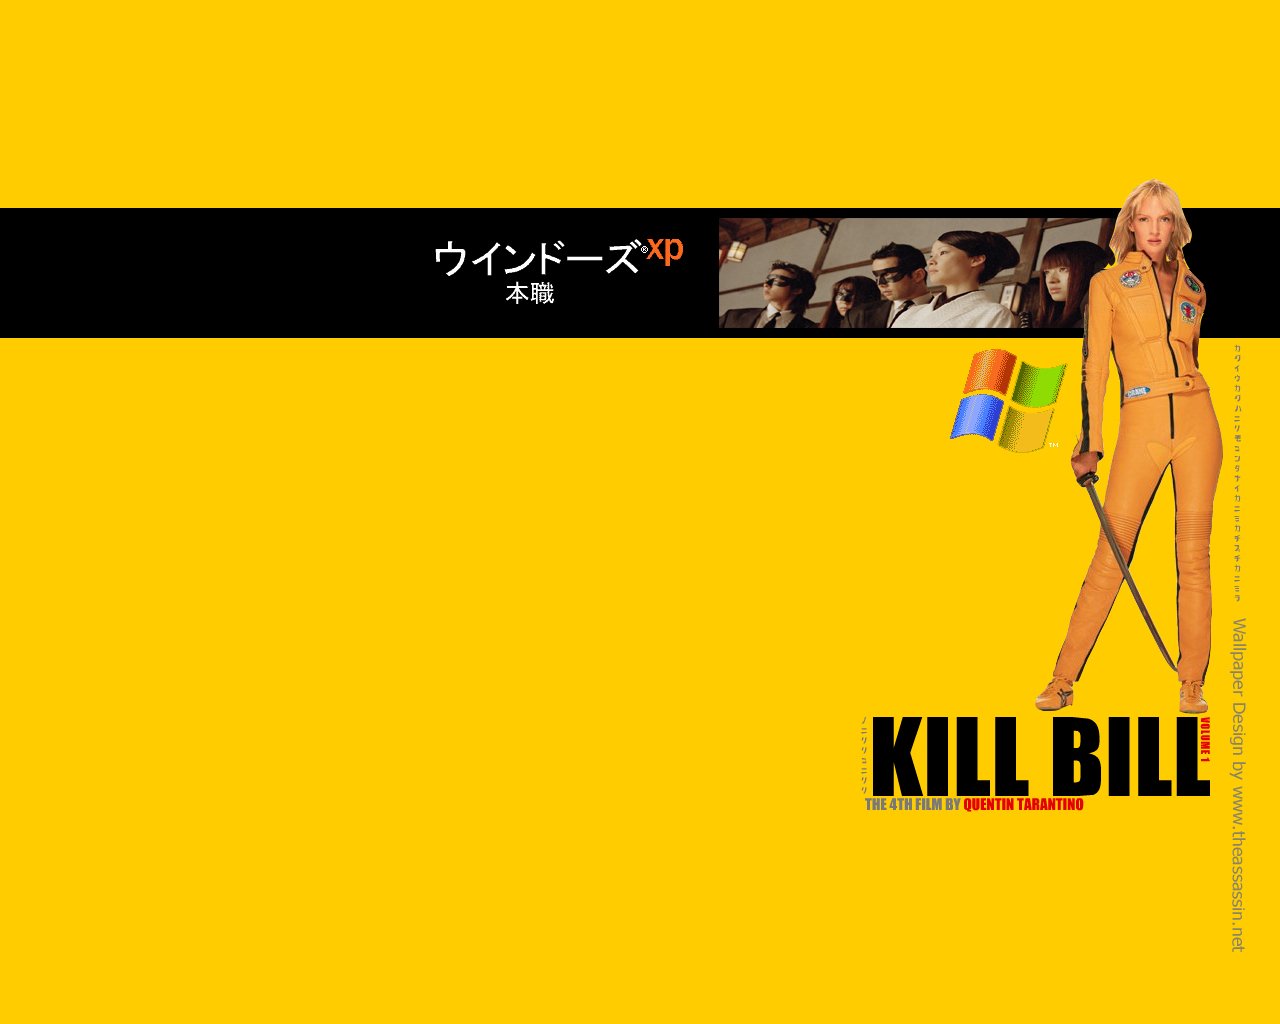 Kill bill nudity